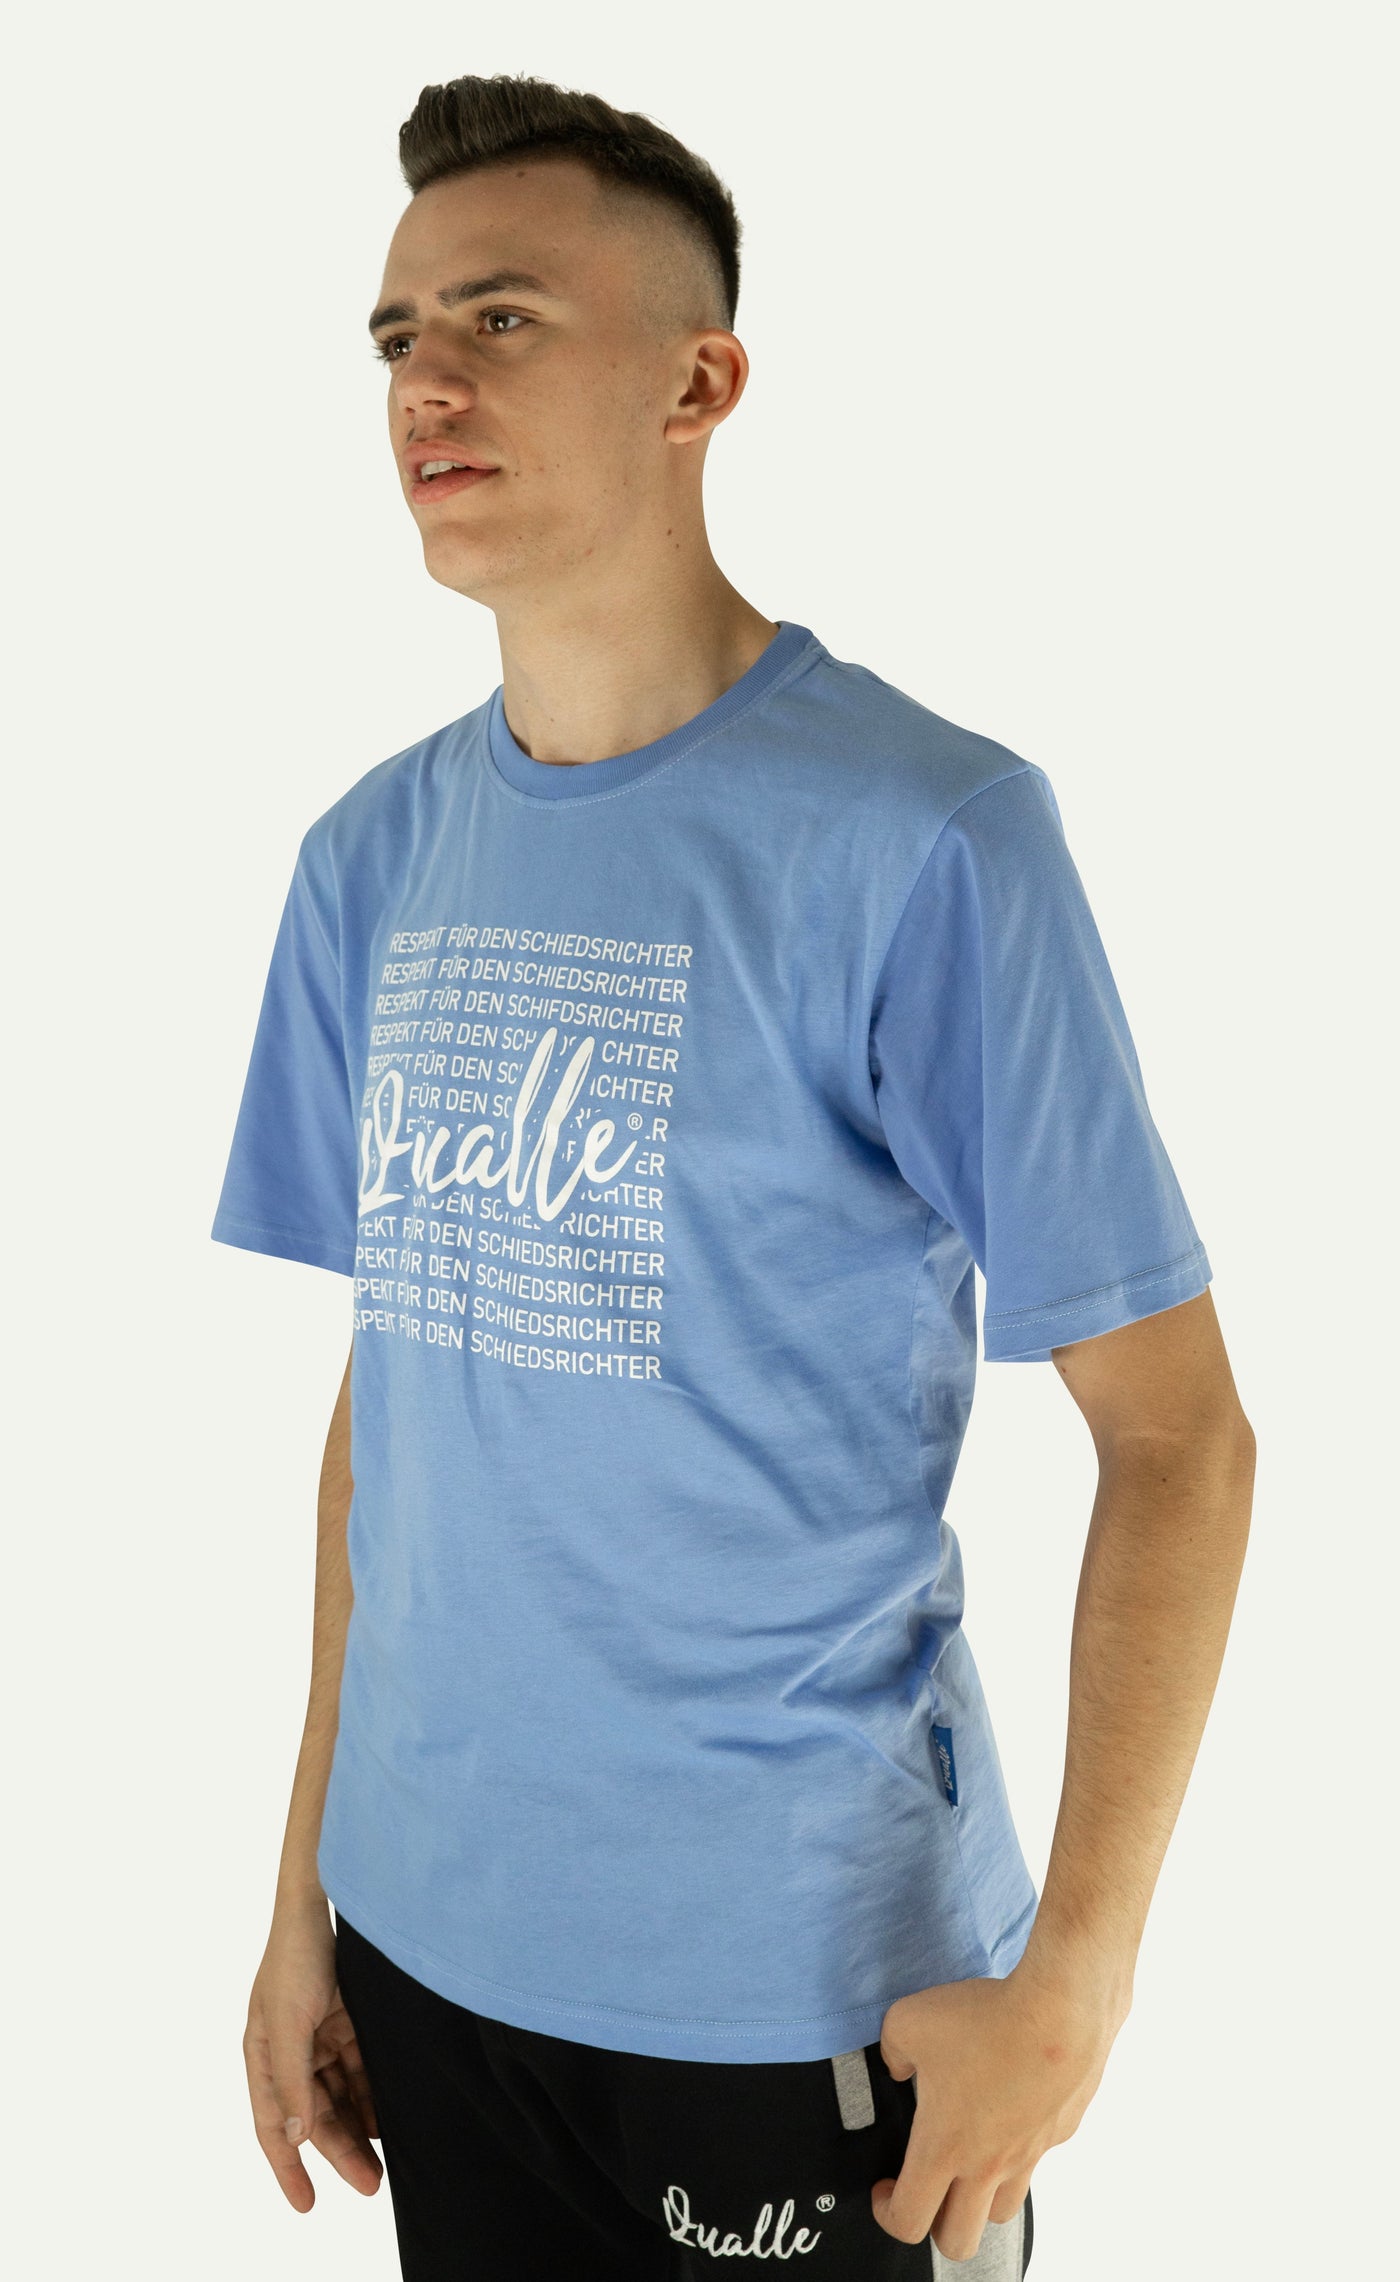 Qualle T-Shirt "100% Respekt" Baumwolle unisex (Kinder, Frauen und Herren)